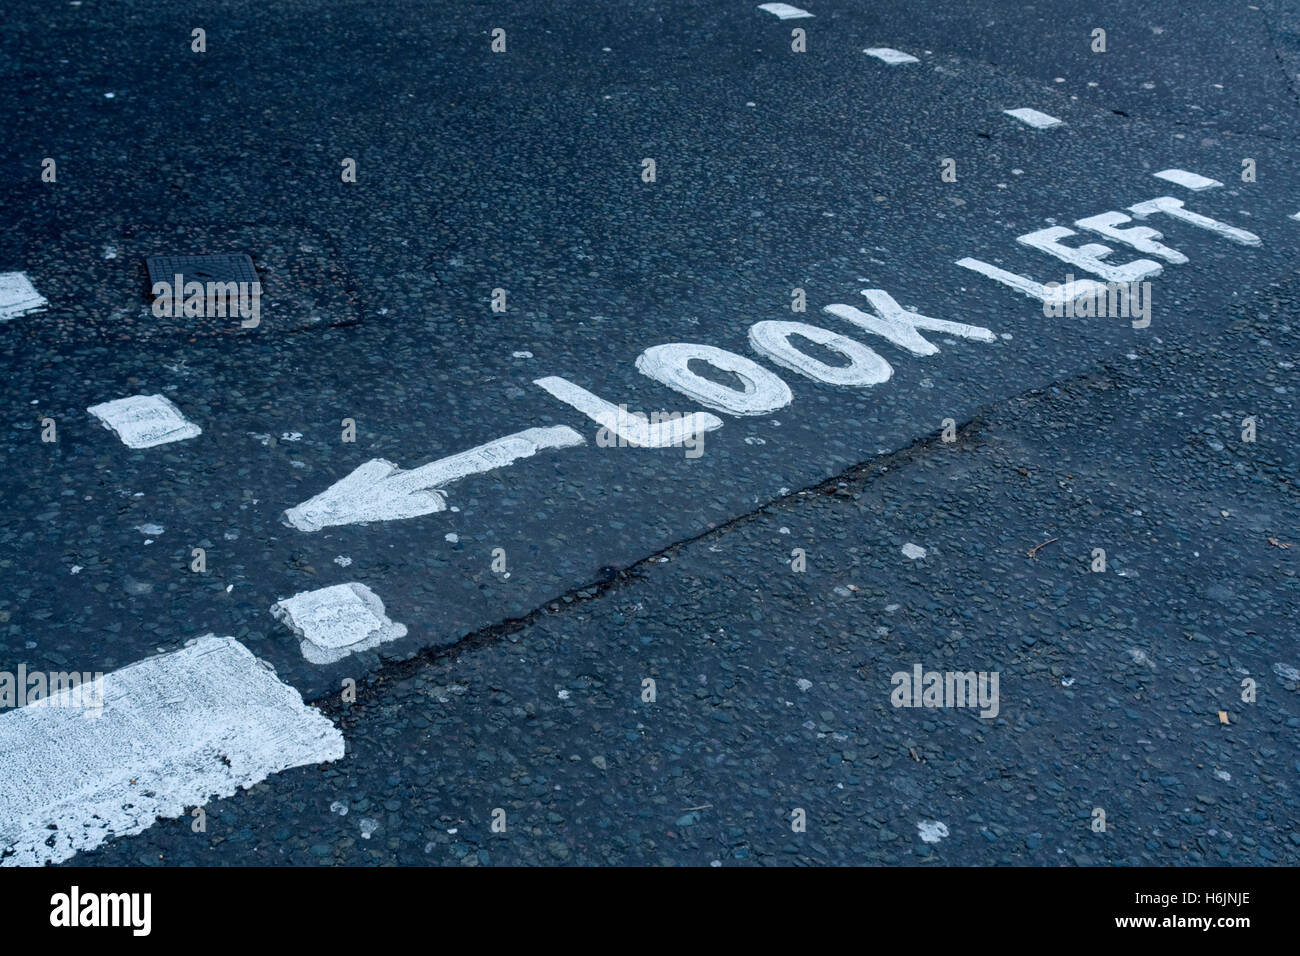 La segnaletica stradale guardare a sinistra, London, England, Regno Unito, Europa Foto Stock